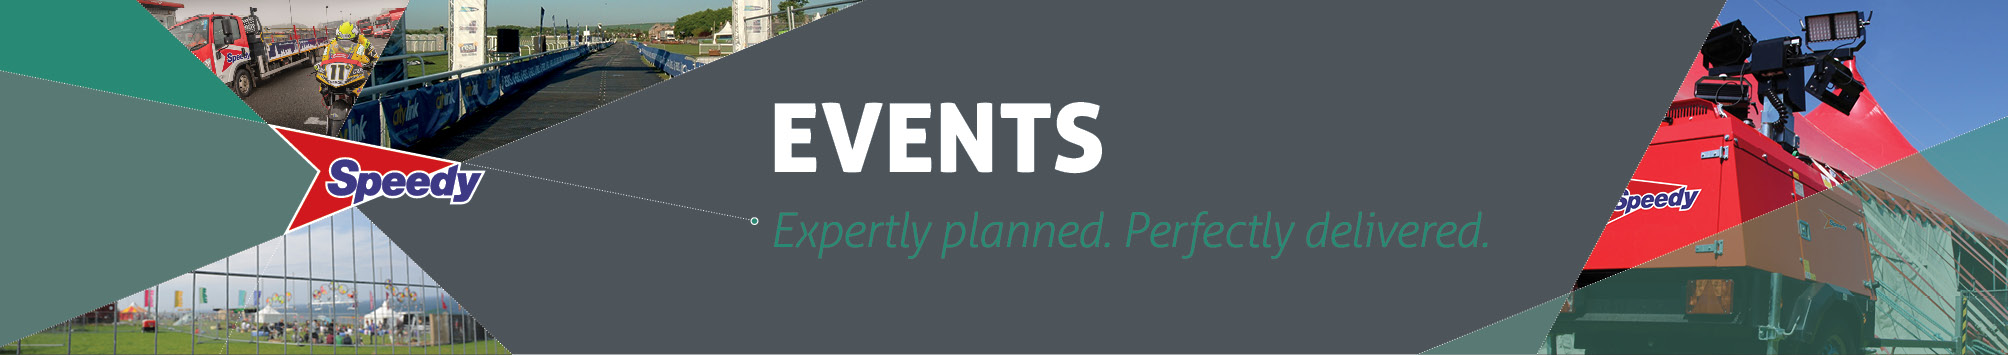 Events Landing Page Header V3.jpg